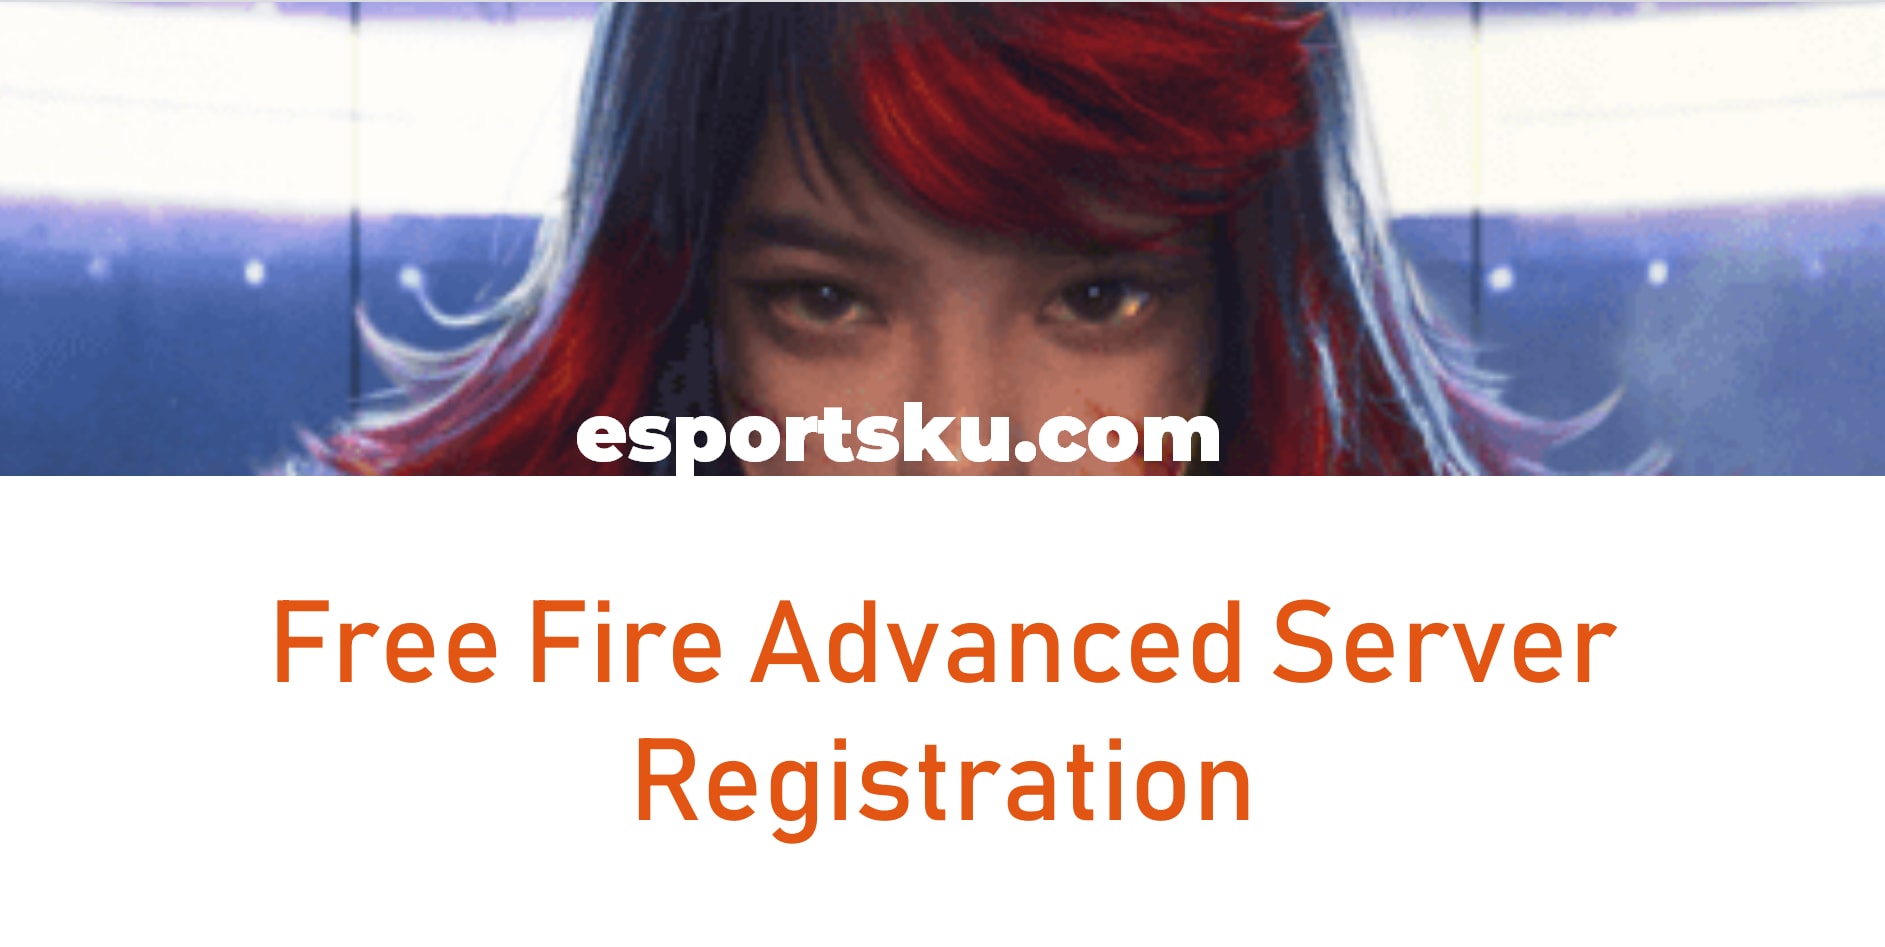 Pendaftaran Advanced Server FF Maret 2020 Free Fire, Registrasi Sekarang !